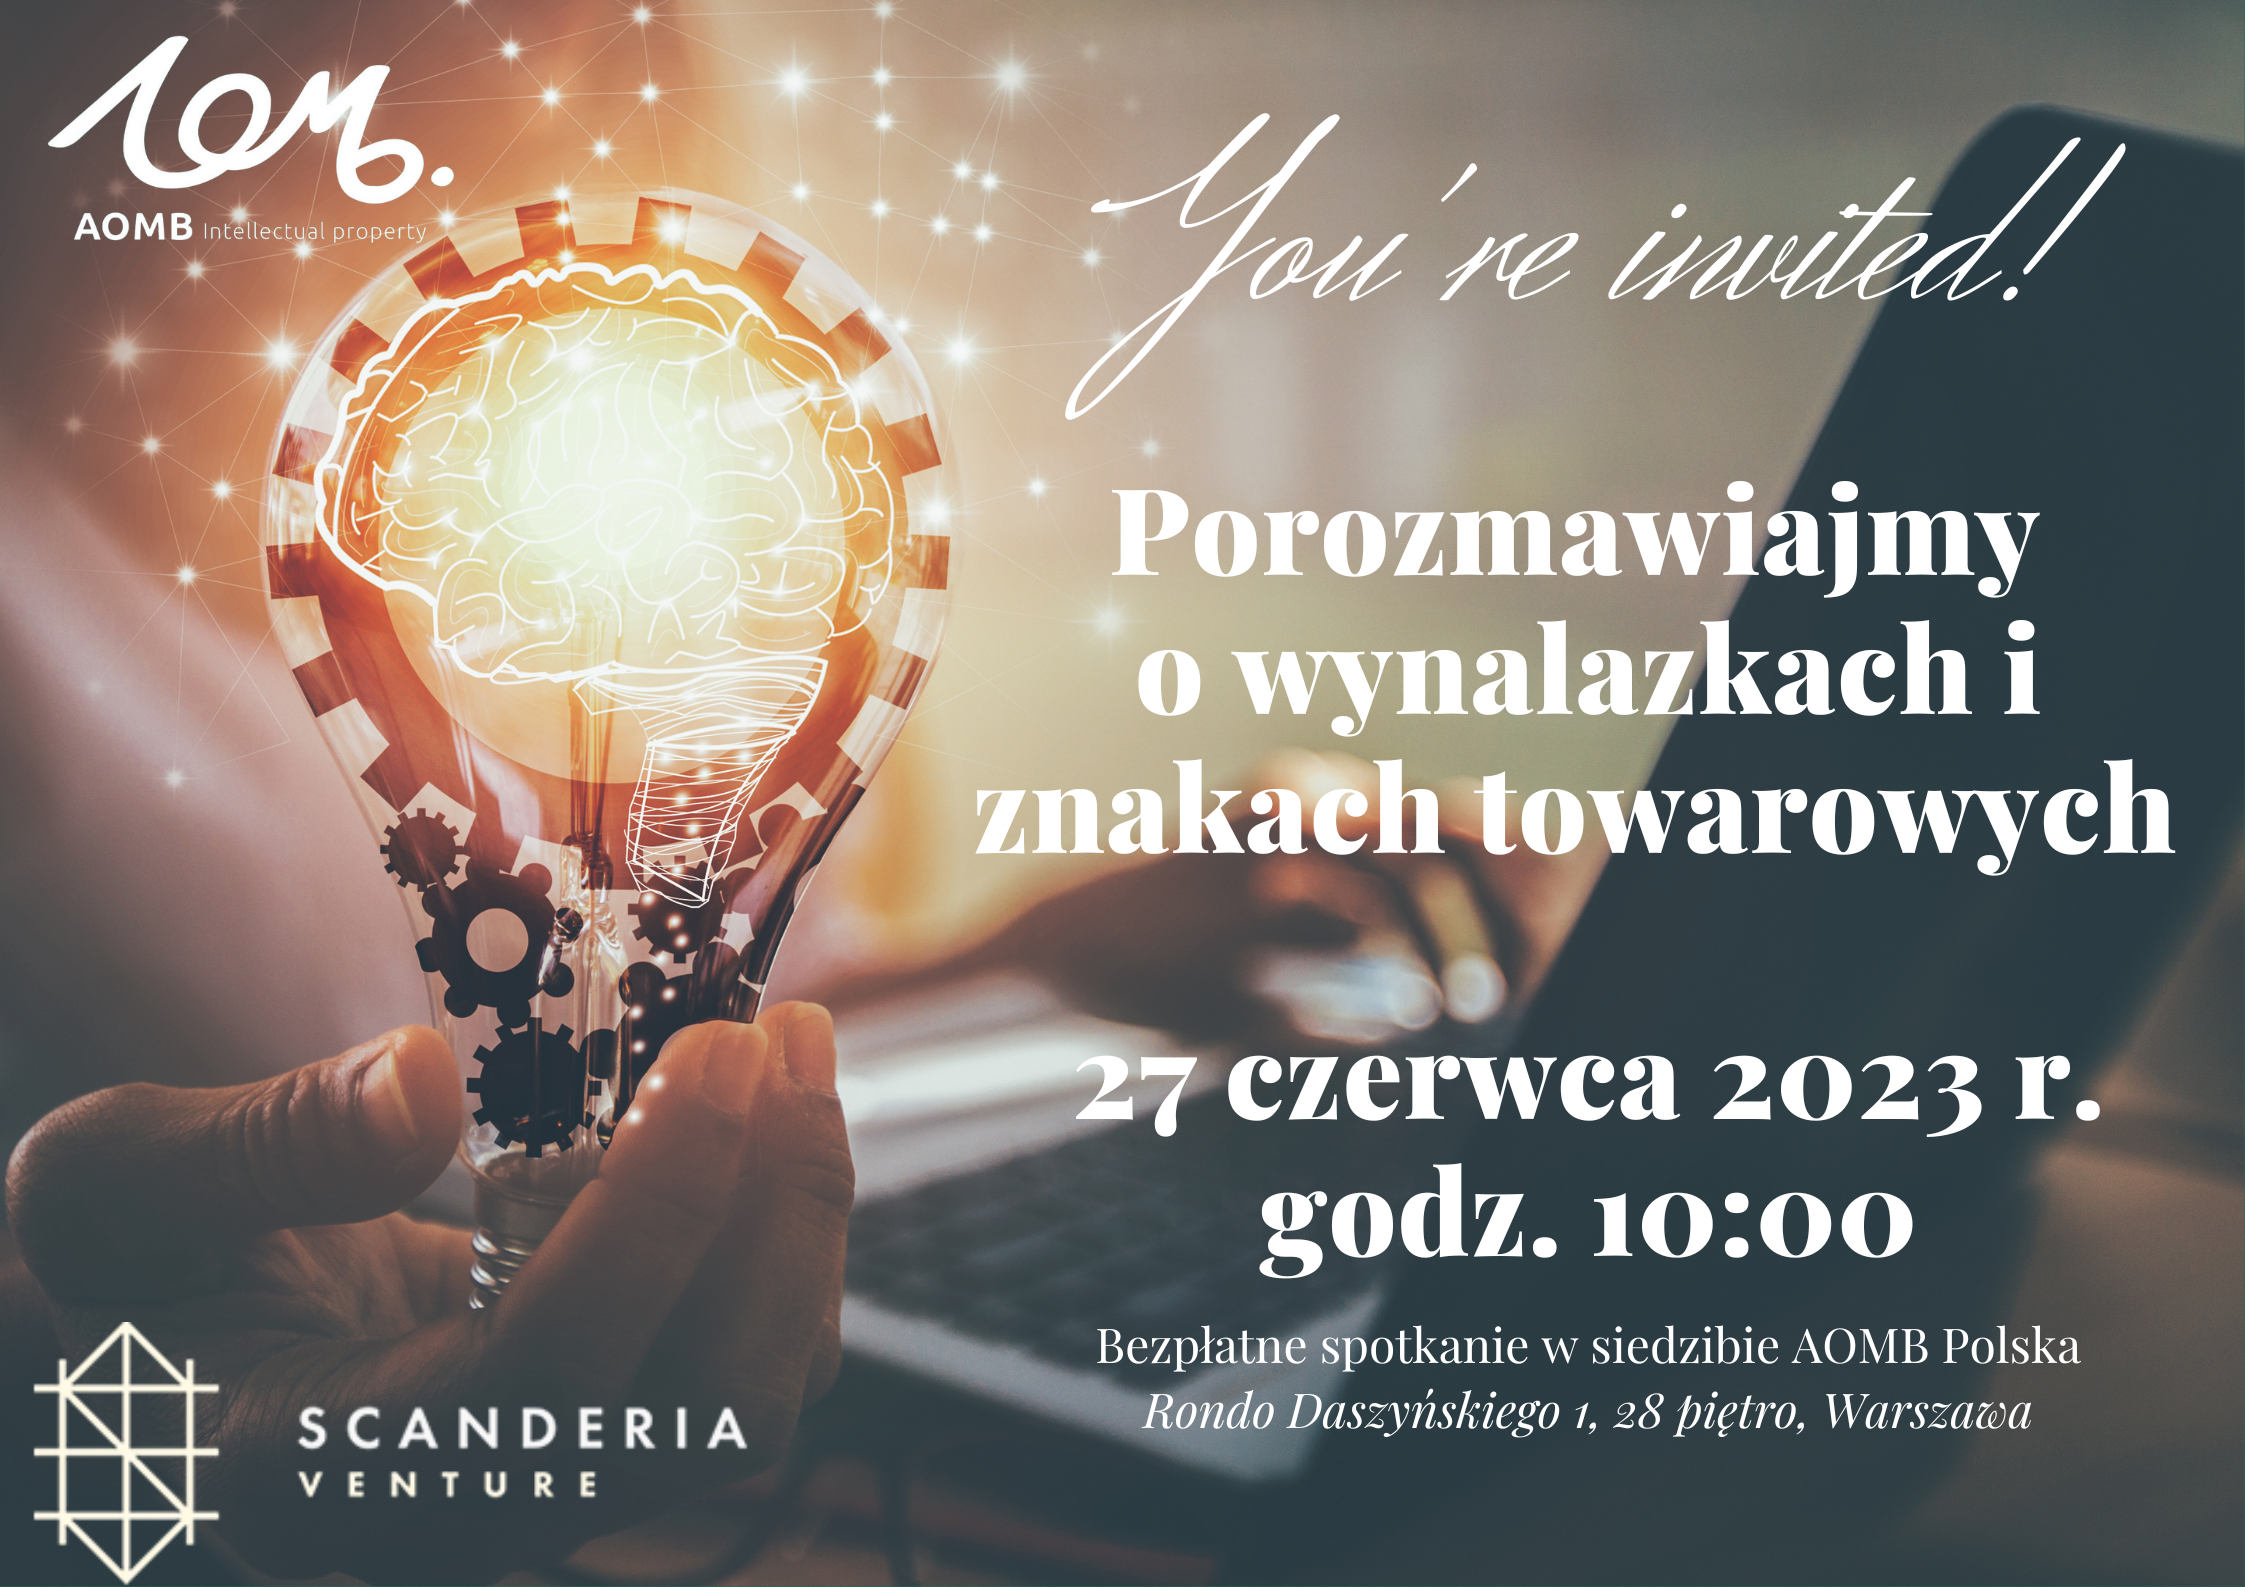 Jak przygotować się do zgłoszenia wynalazku i znaku towarowego? 27 czerwca – spotkajmy się w Warszawie!